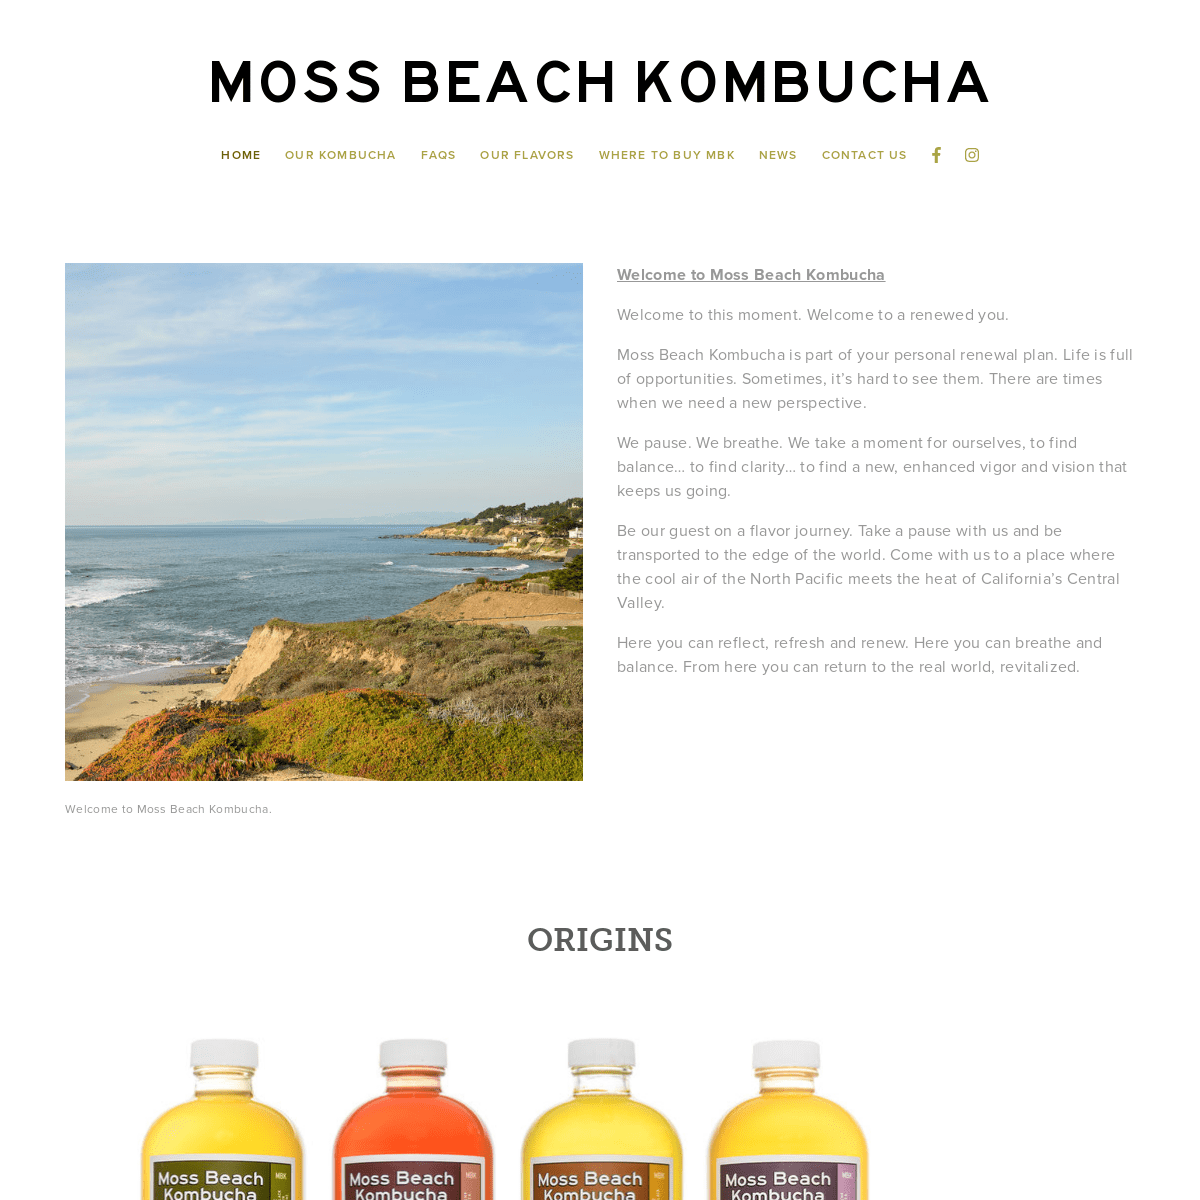 A complete backup of mossbeachkombucha.com